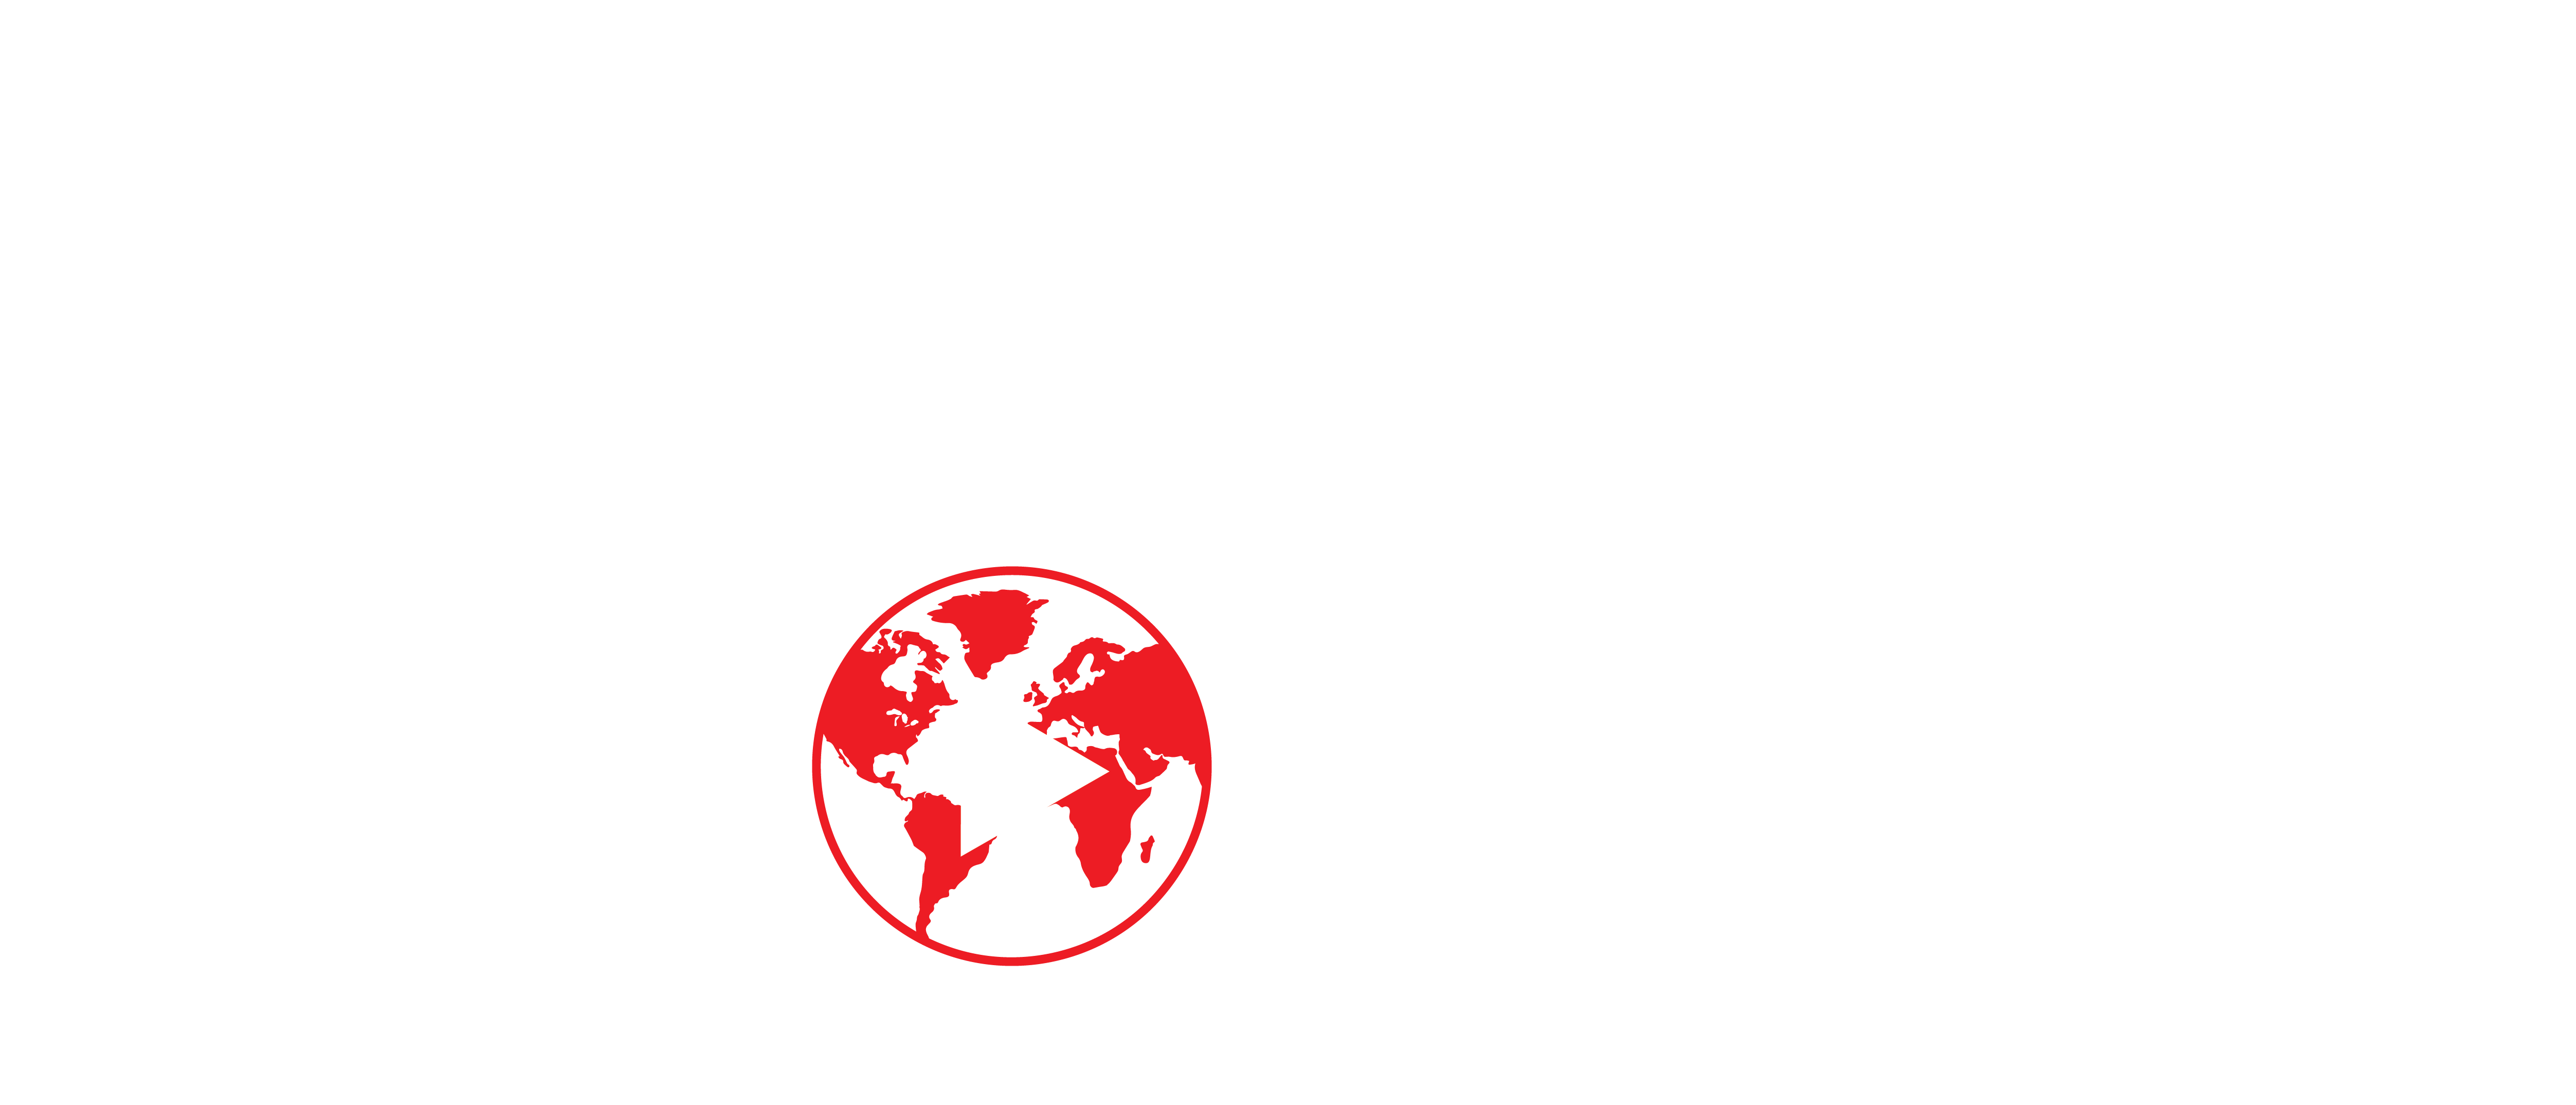 Indie Films